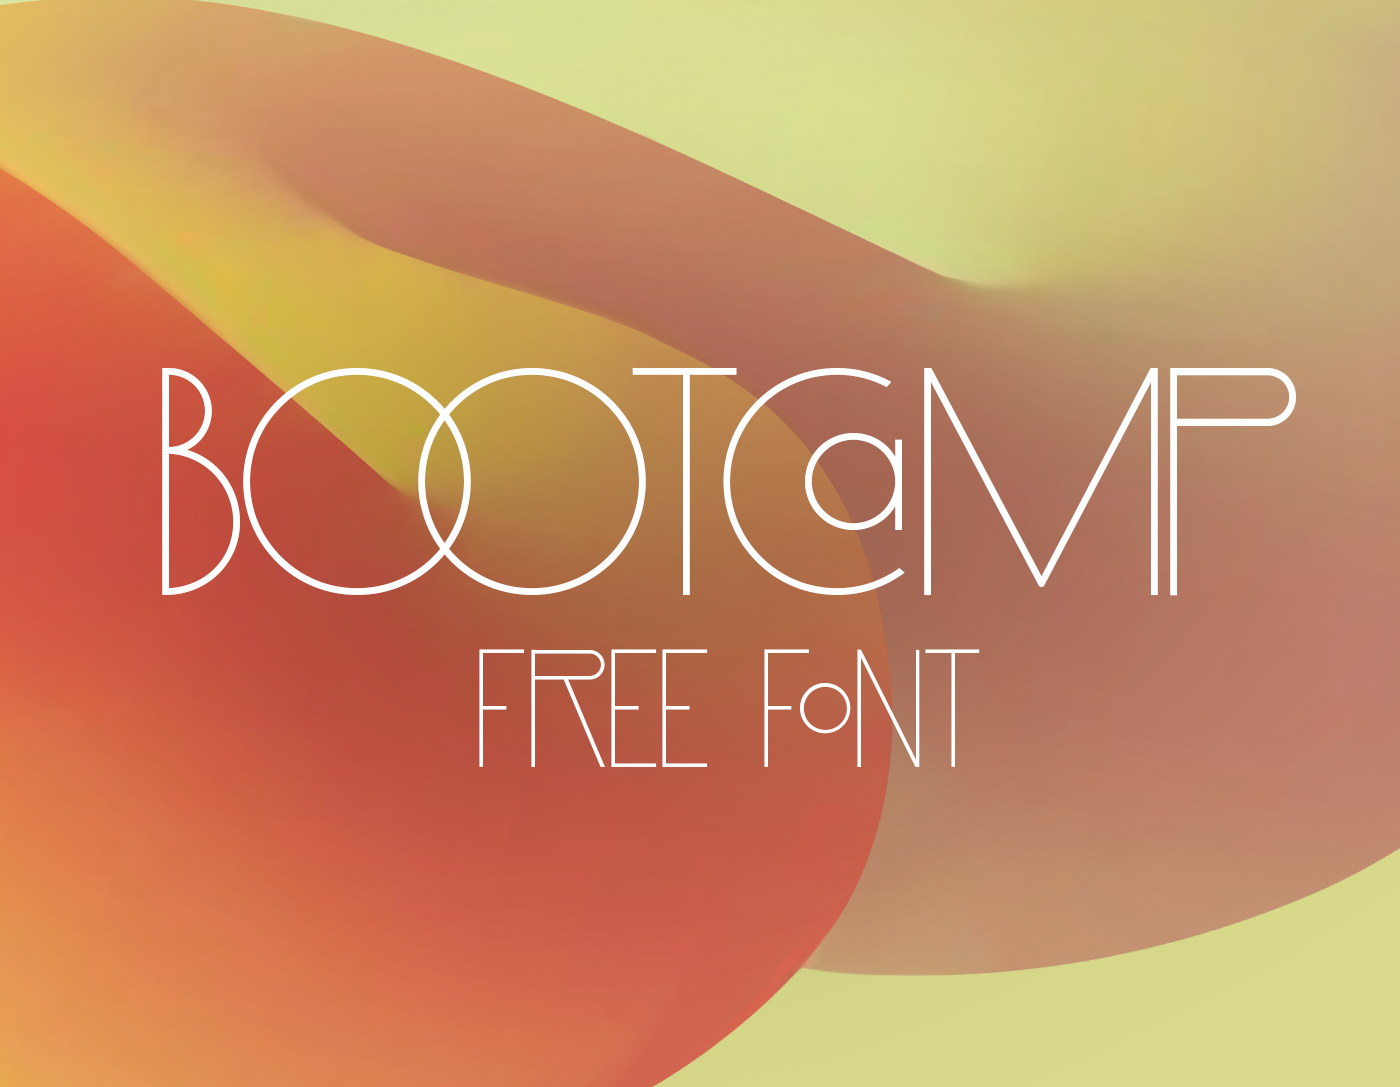 Free font